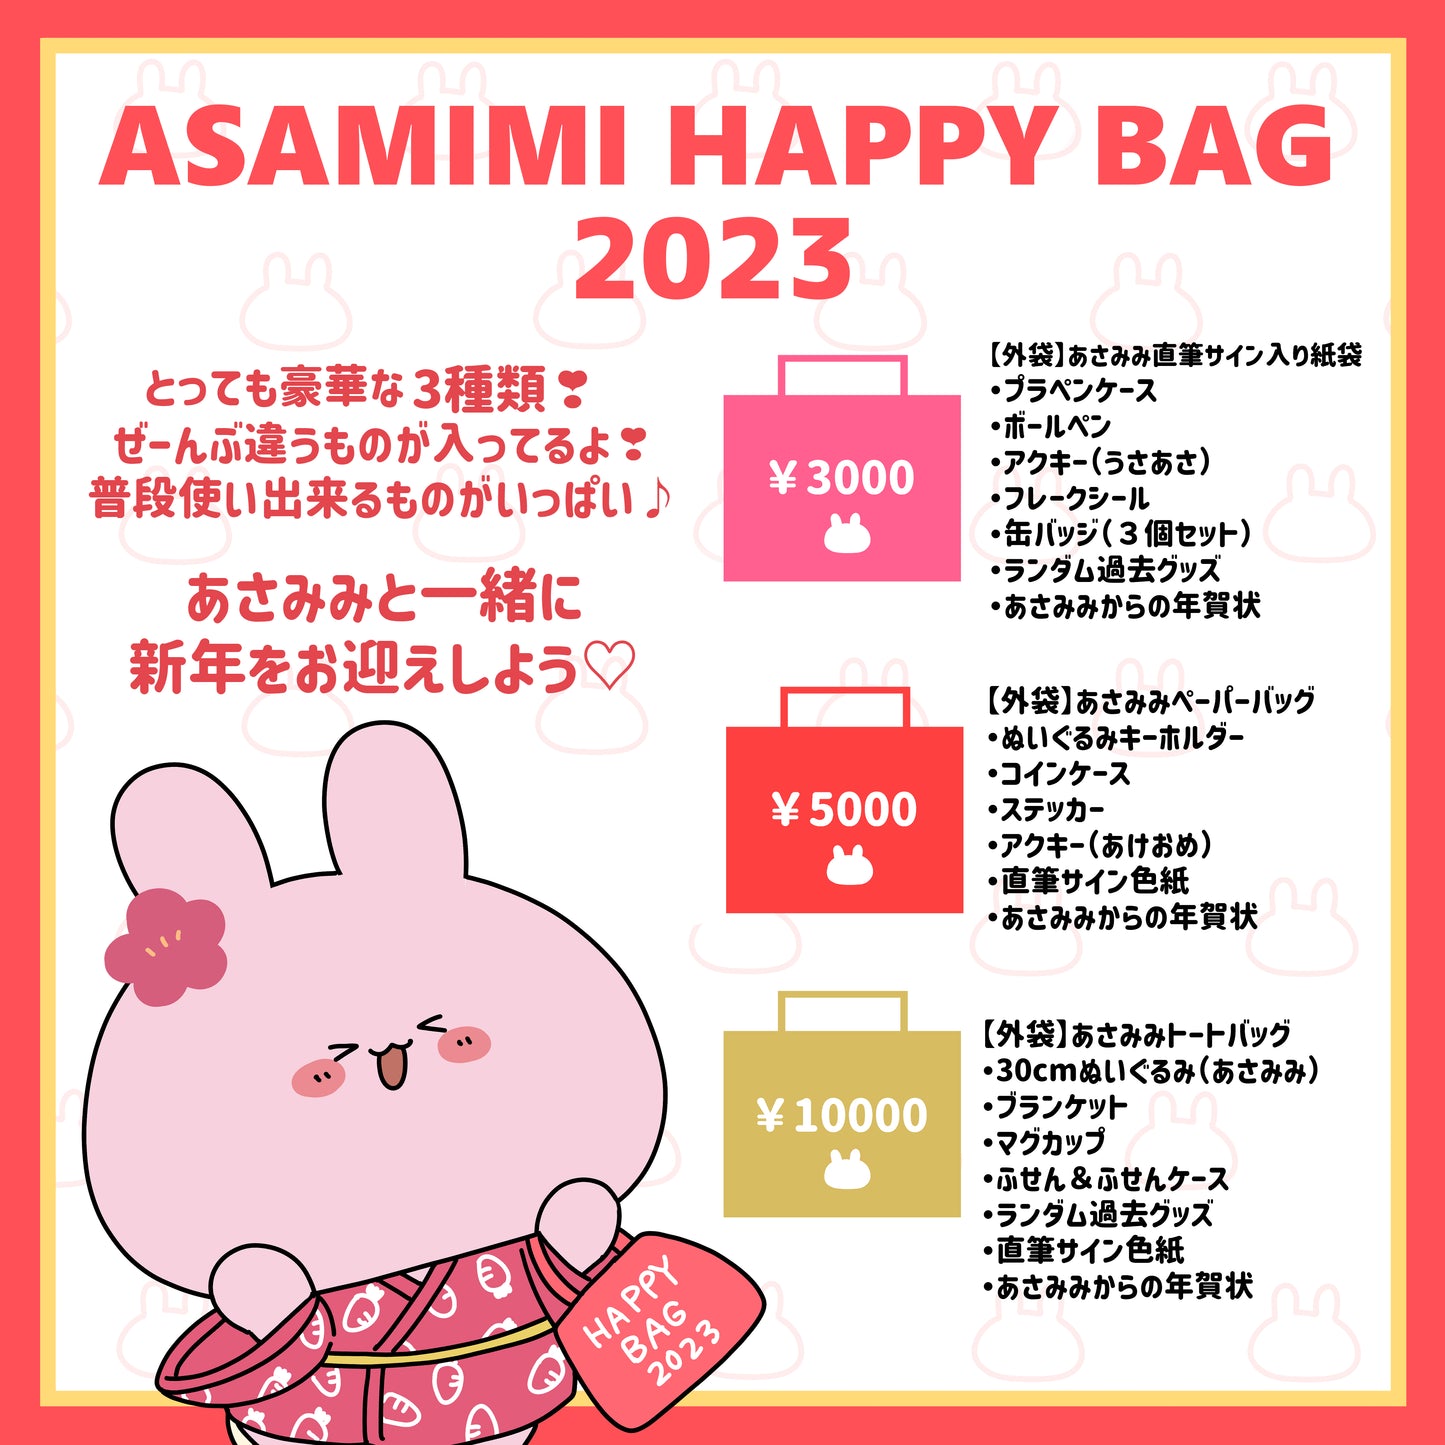 [Asamimi-chan] ASAMIMI HAPPY BAG (5 000 ¥) [Précommande en quantité limitée]